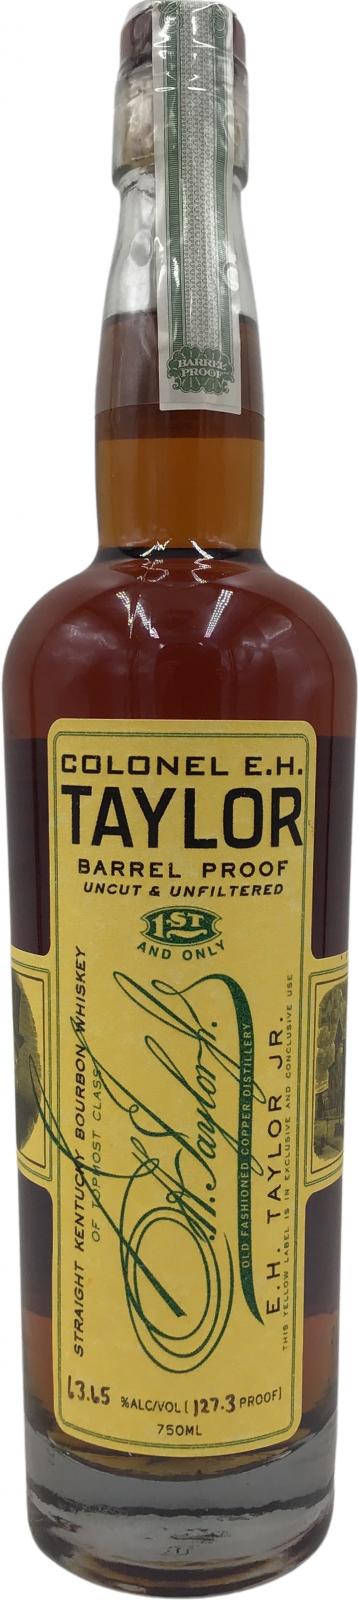 Colonel E.H. Taylor Barrel Proof 63.65% 750ml